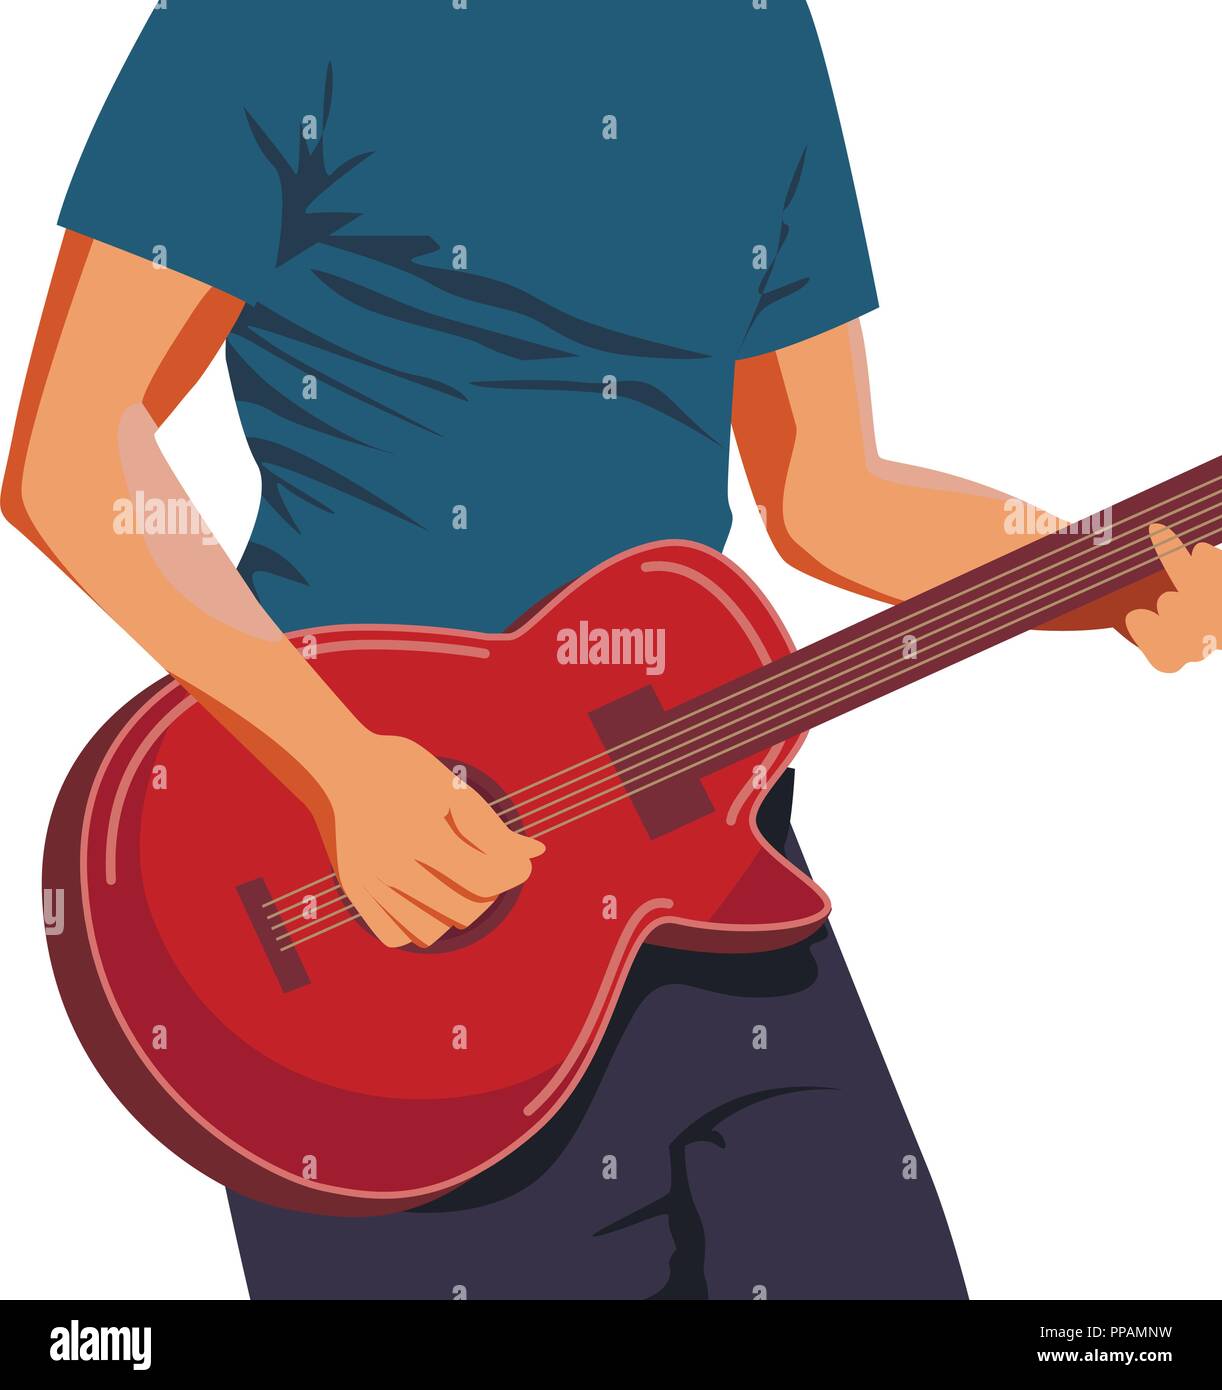 Illustrazione Vettoriale delle mani playing marrone chiaro chitarra acustica. Close up, blu-verde, sfondo formato orizzontale. Illustrazione Vettoriale